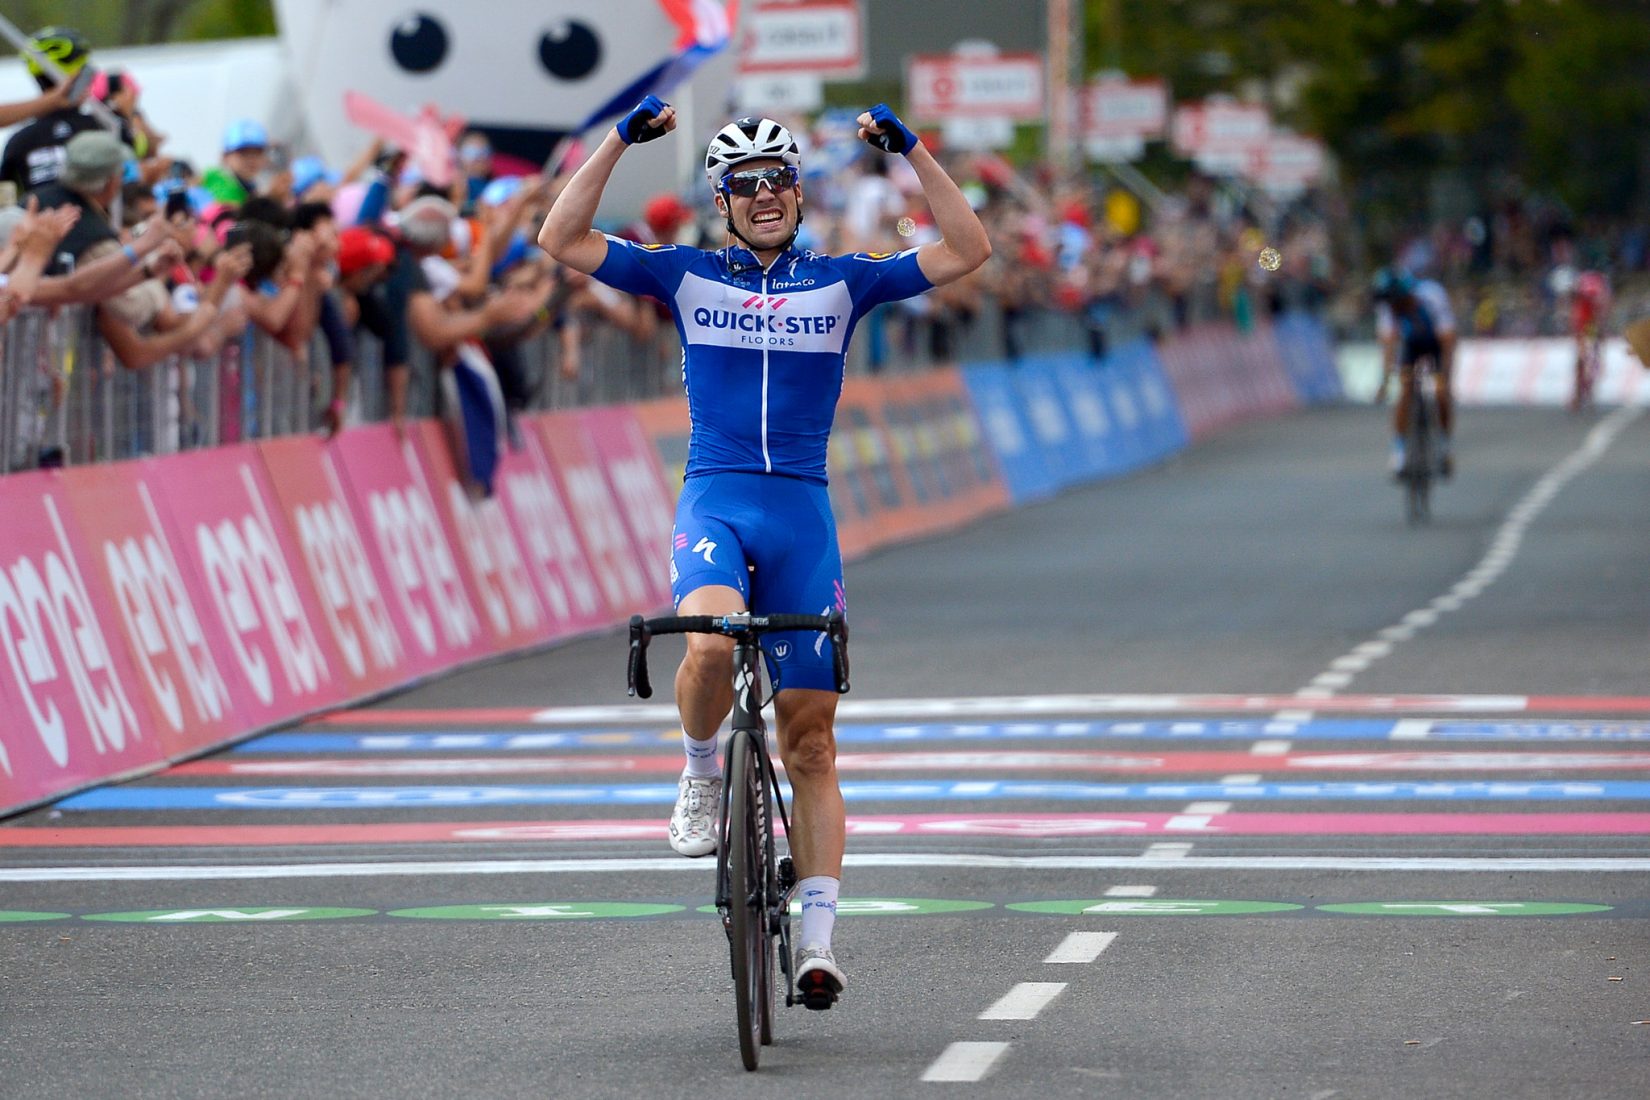 Giro 101: Arriva la fuga! A Prato Nevoso vince Schachmann - Maglia Rosa sotto attacco